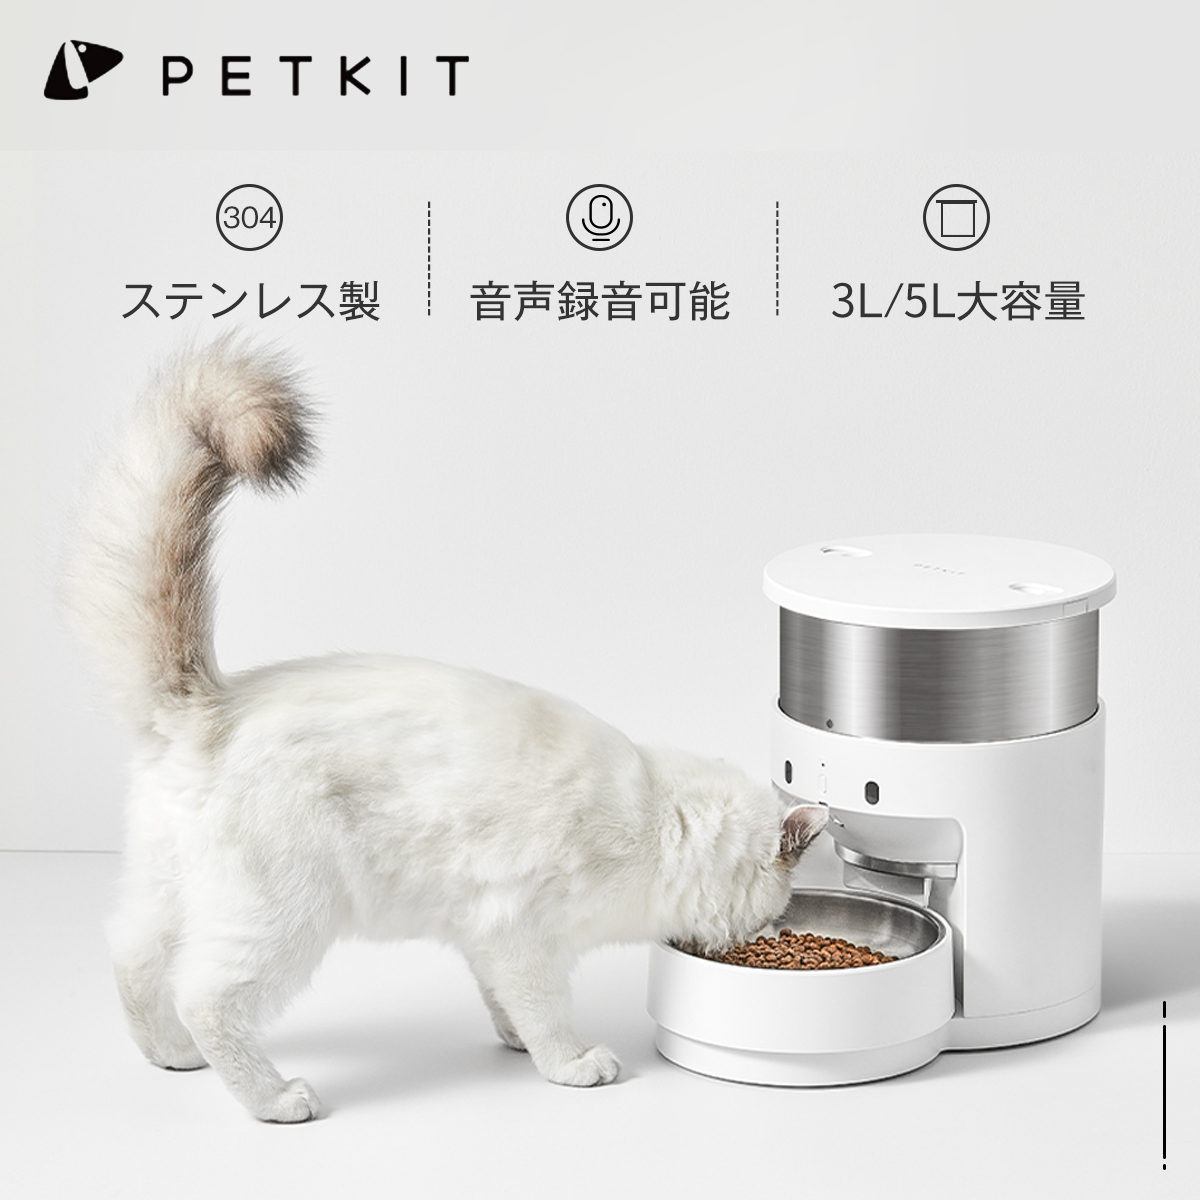 してながら 自動給餌器 猫 中小型犬用 ペット自動餌 : 日用品雑貨 しいフード